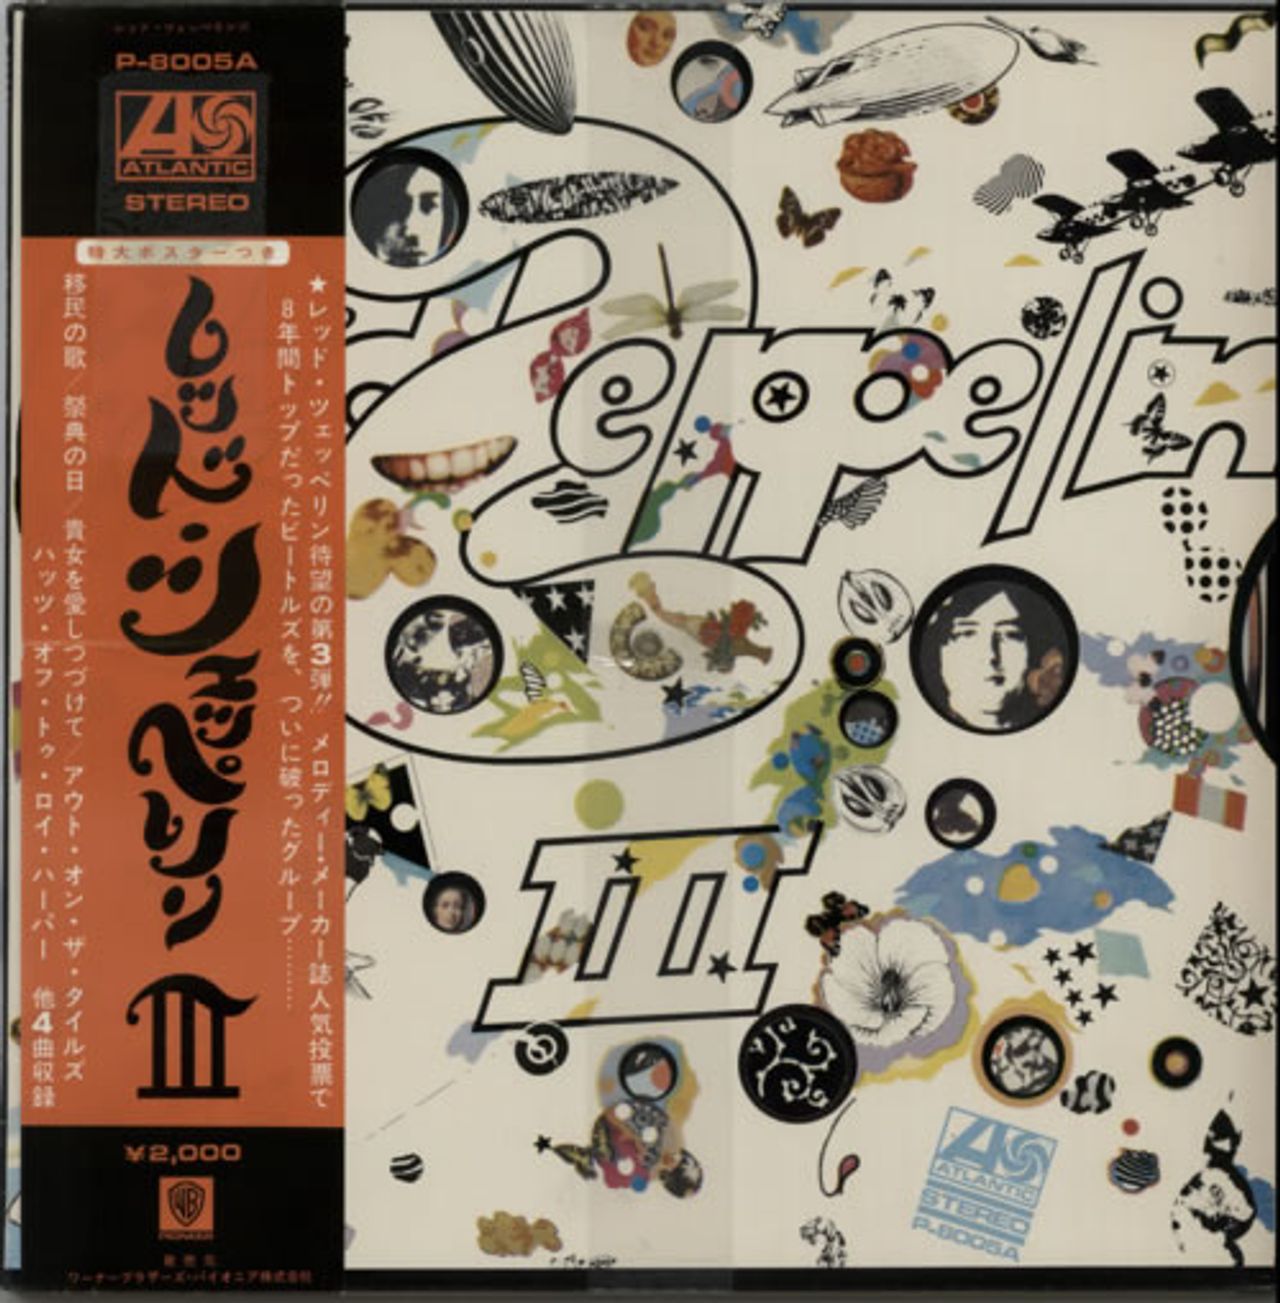 Zeppelin Led III + Obi Japanese Vinyl LP — RareVinyl.com